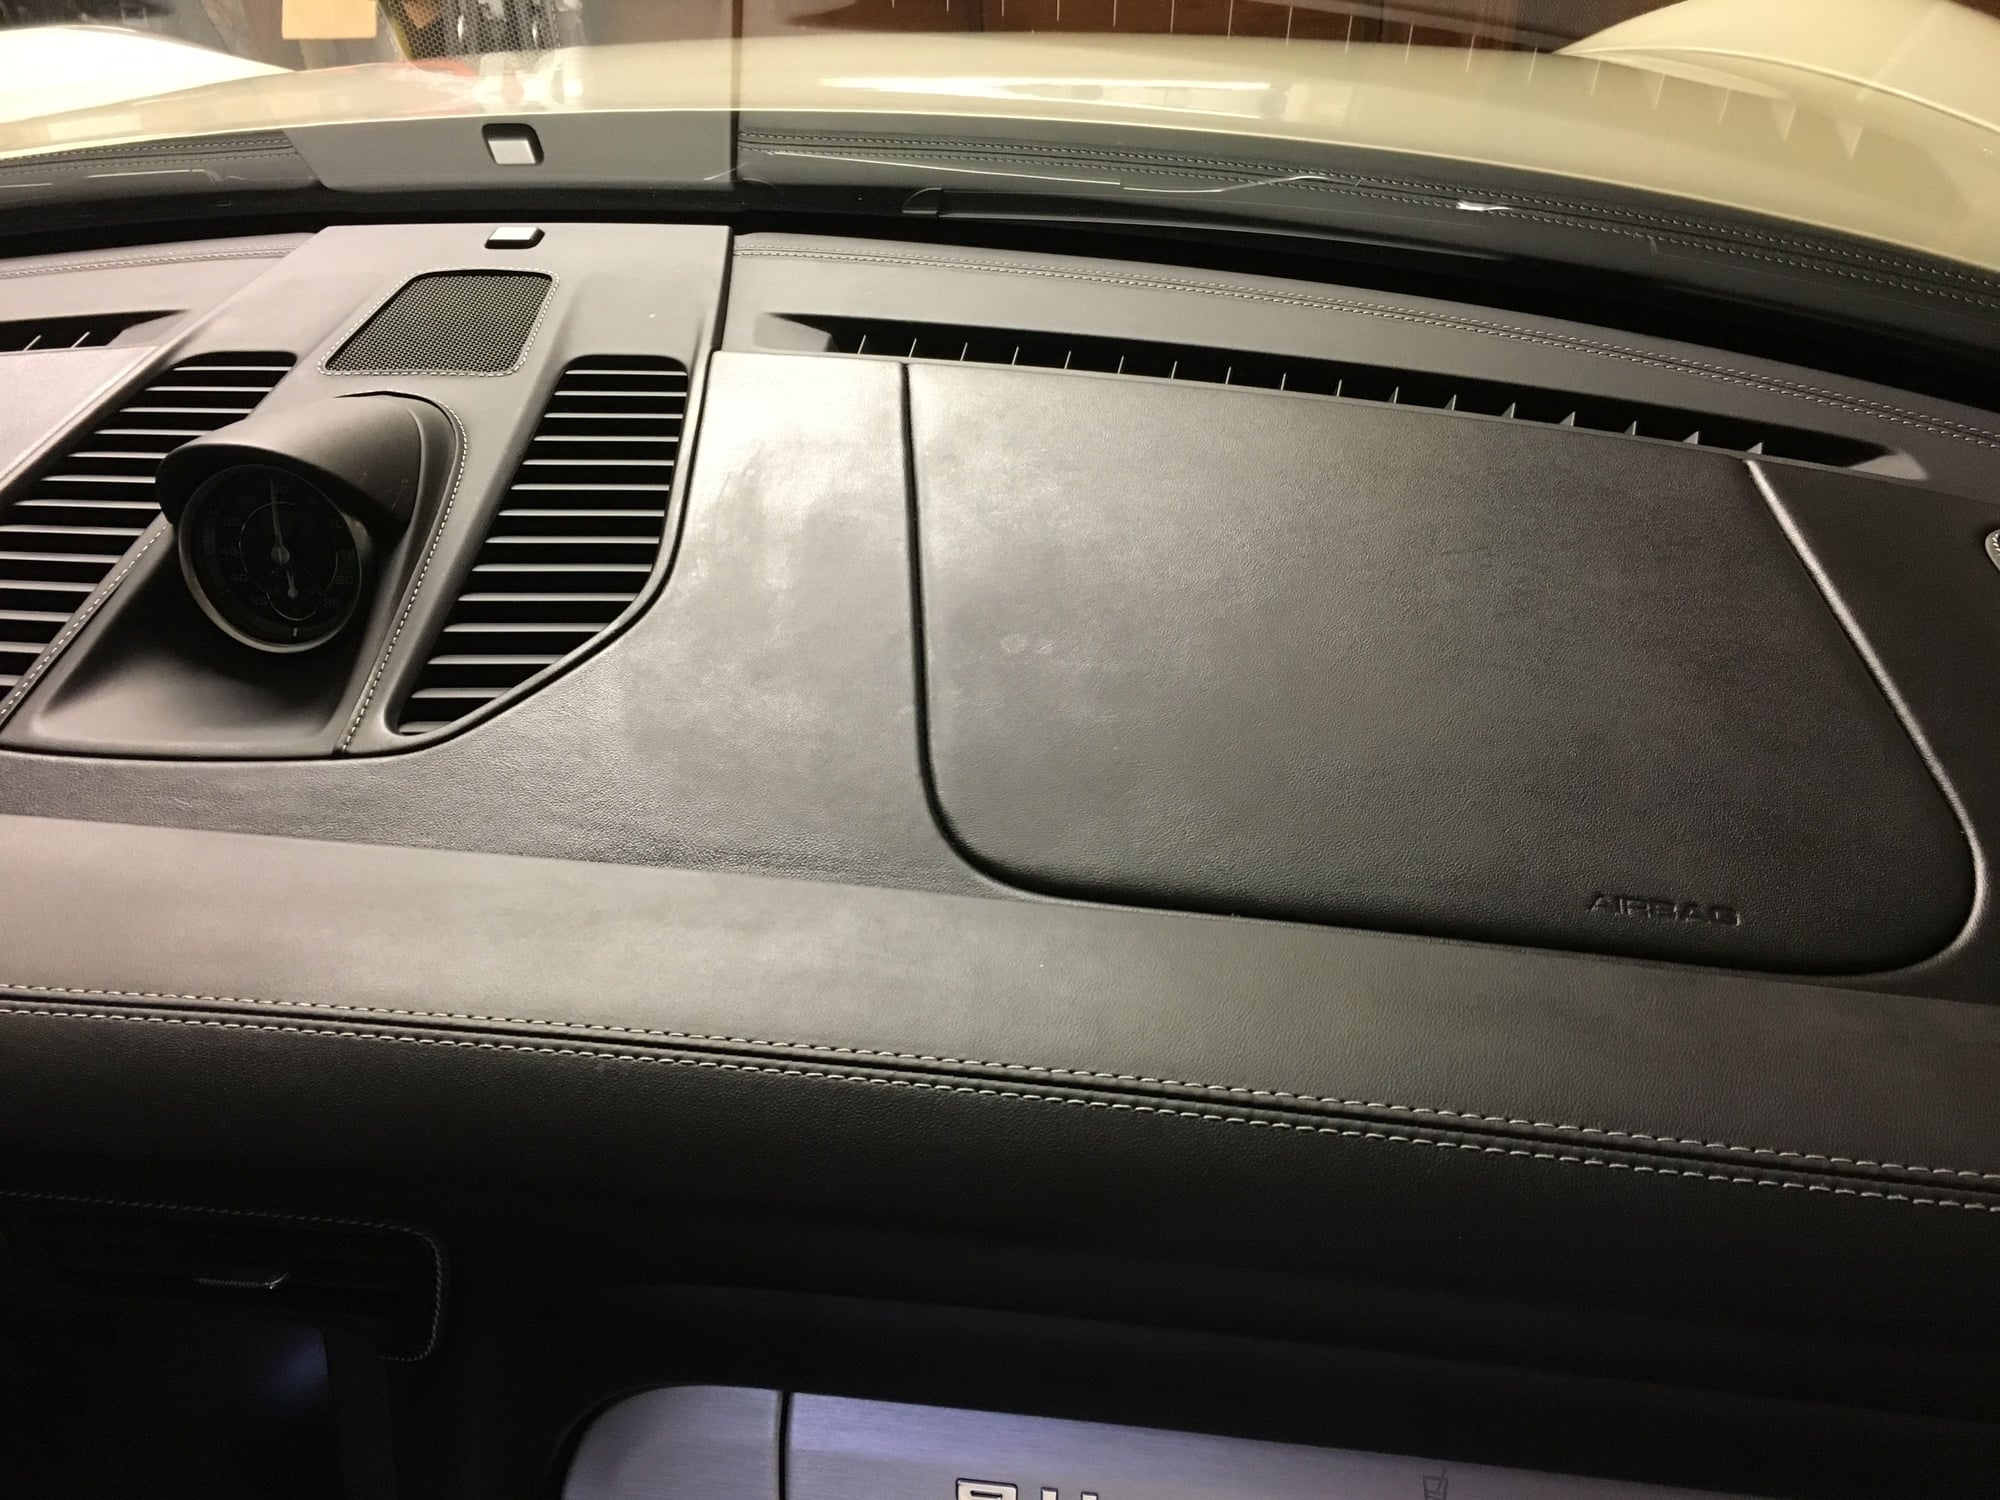 Leather dash cleaning recommendations? - Rennlist - Porsche